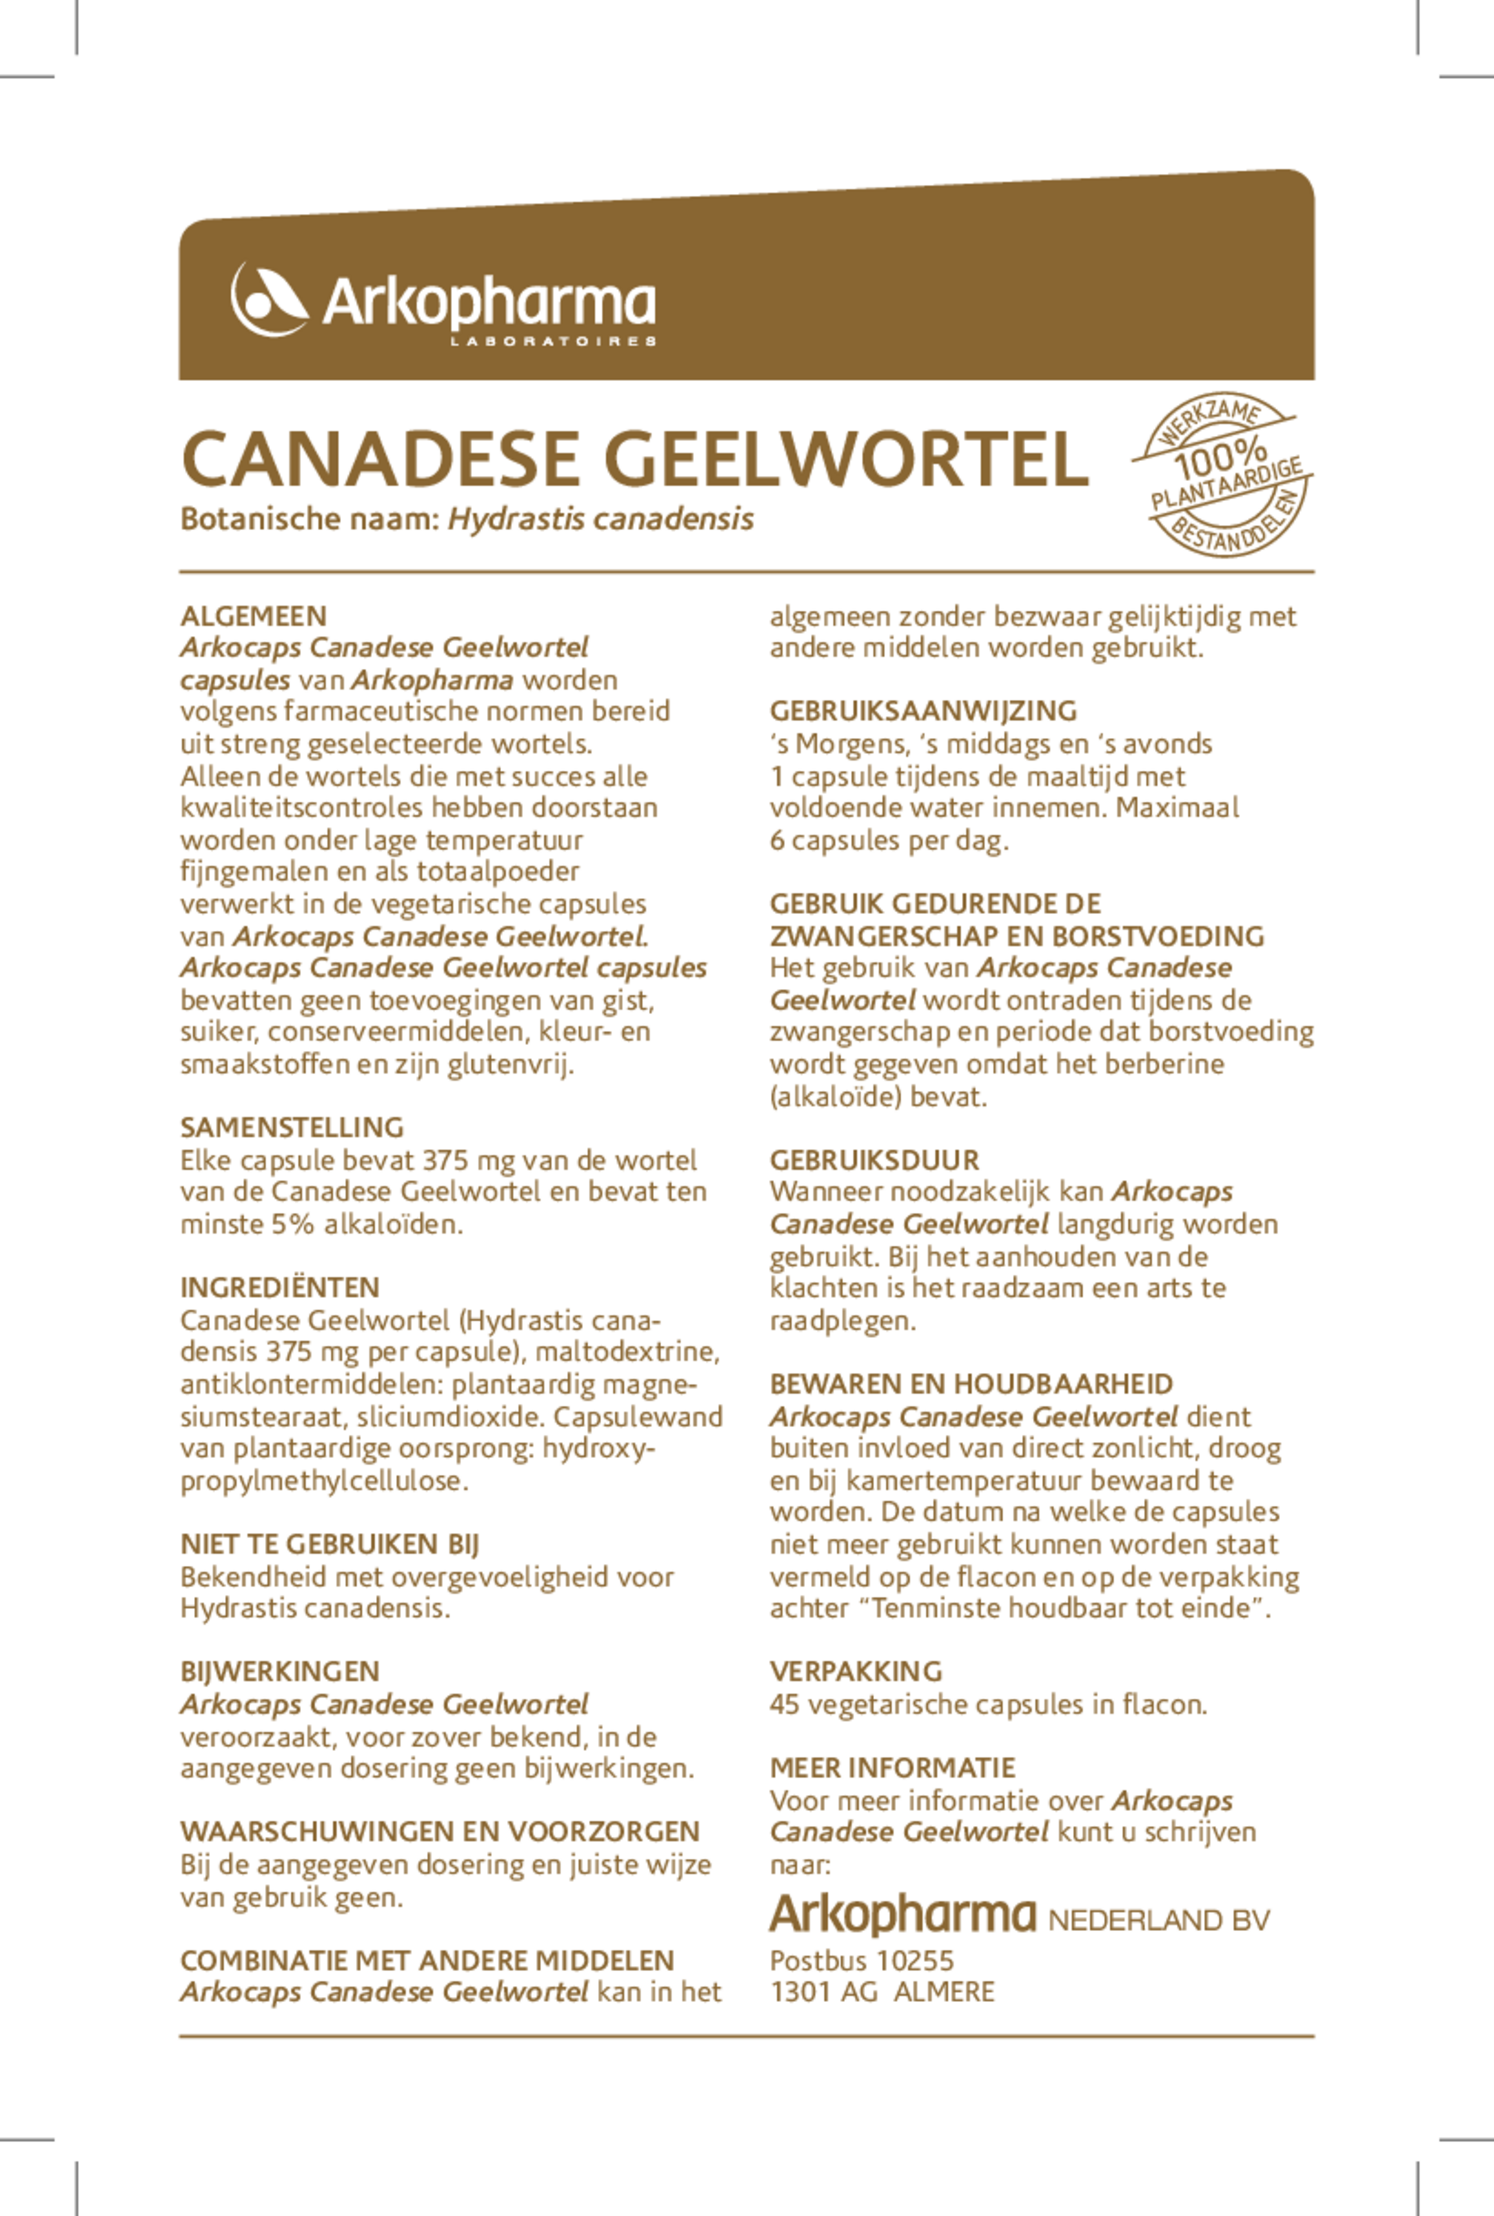 Canadese Geelwortel Capsules afbeelding van document #1, gebruiksaanwijzing